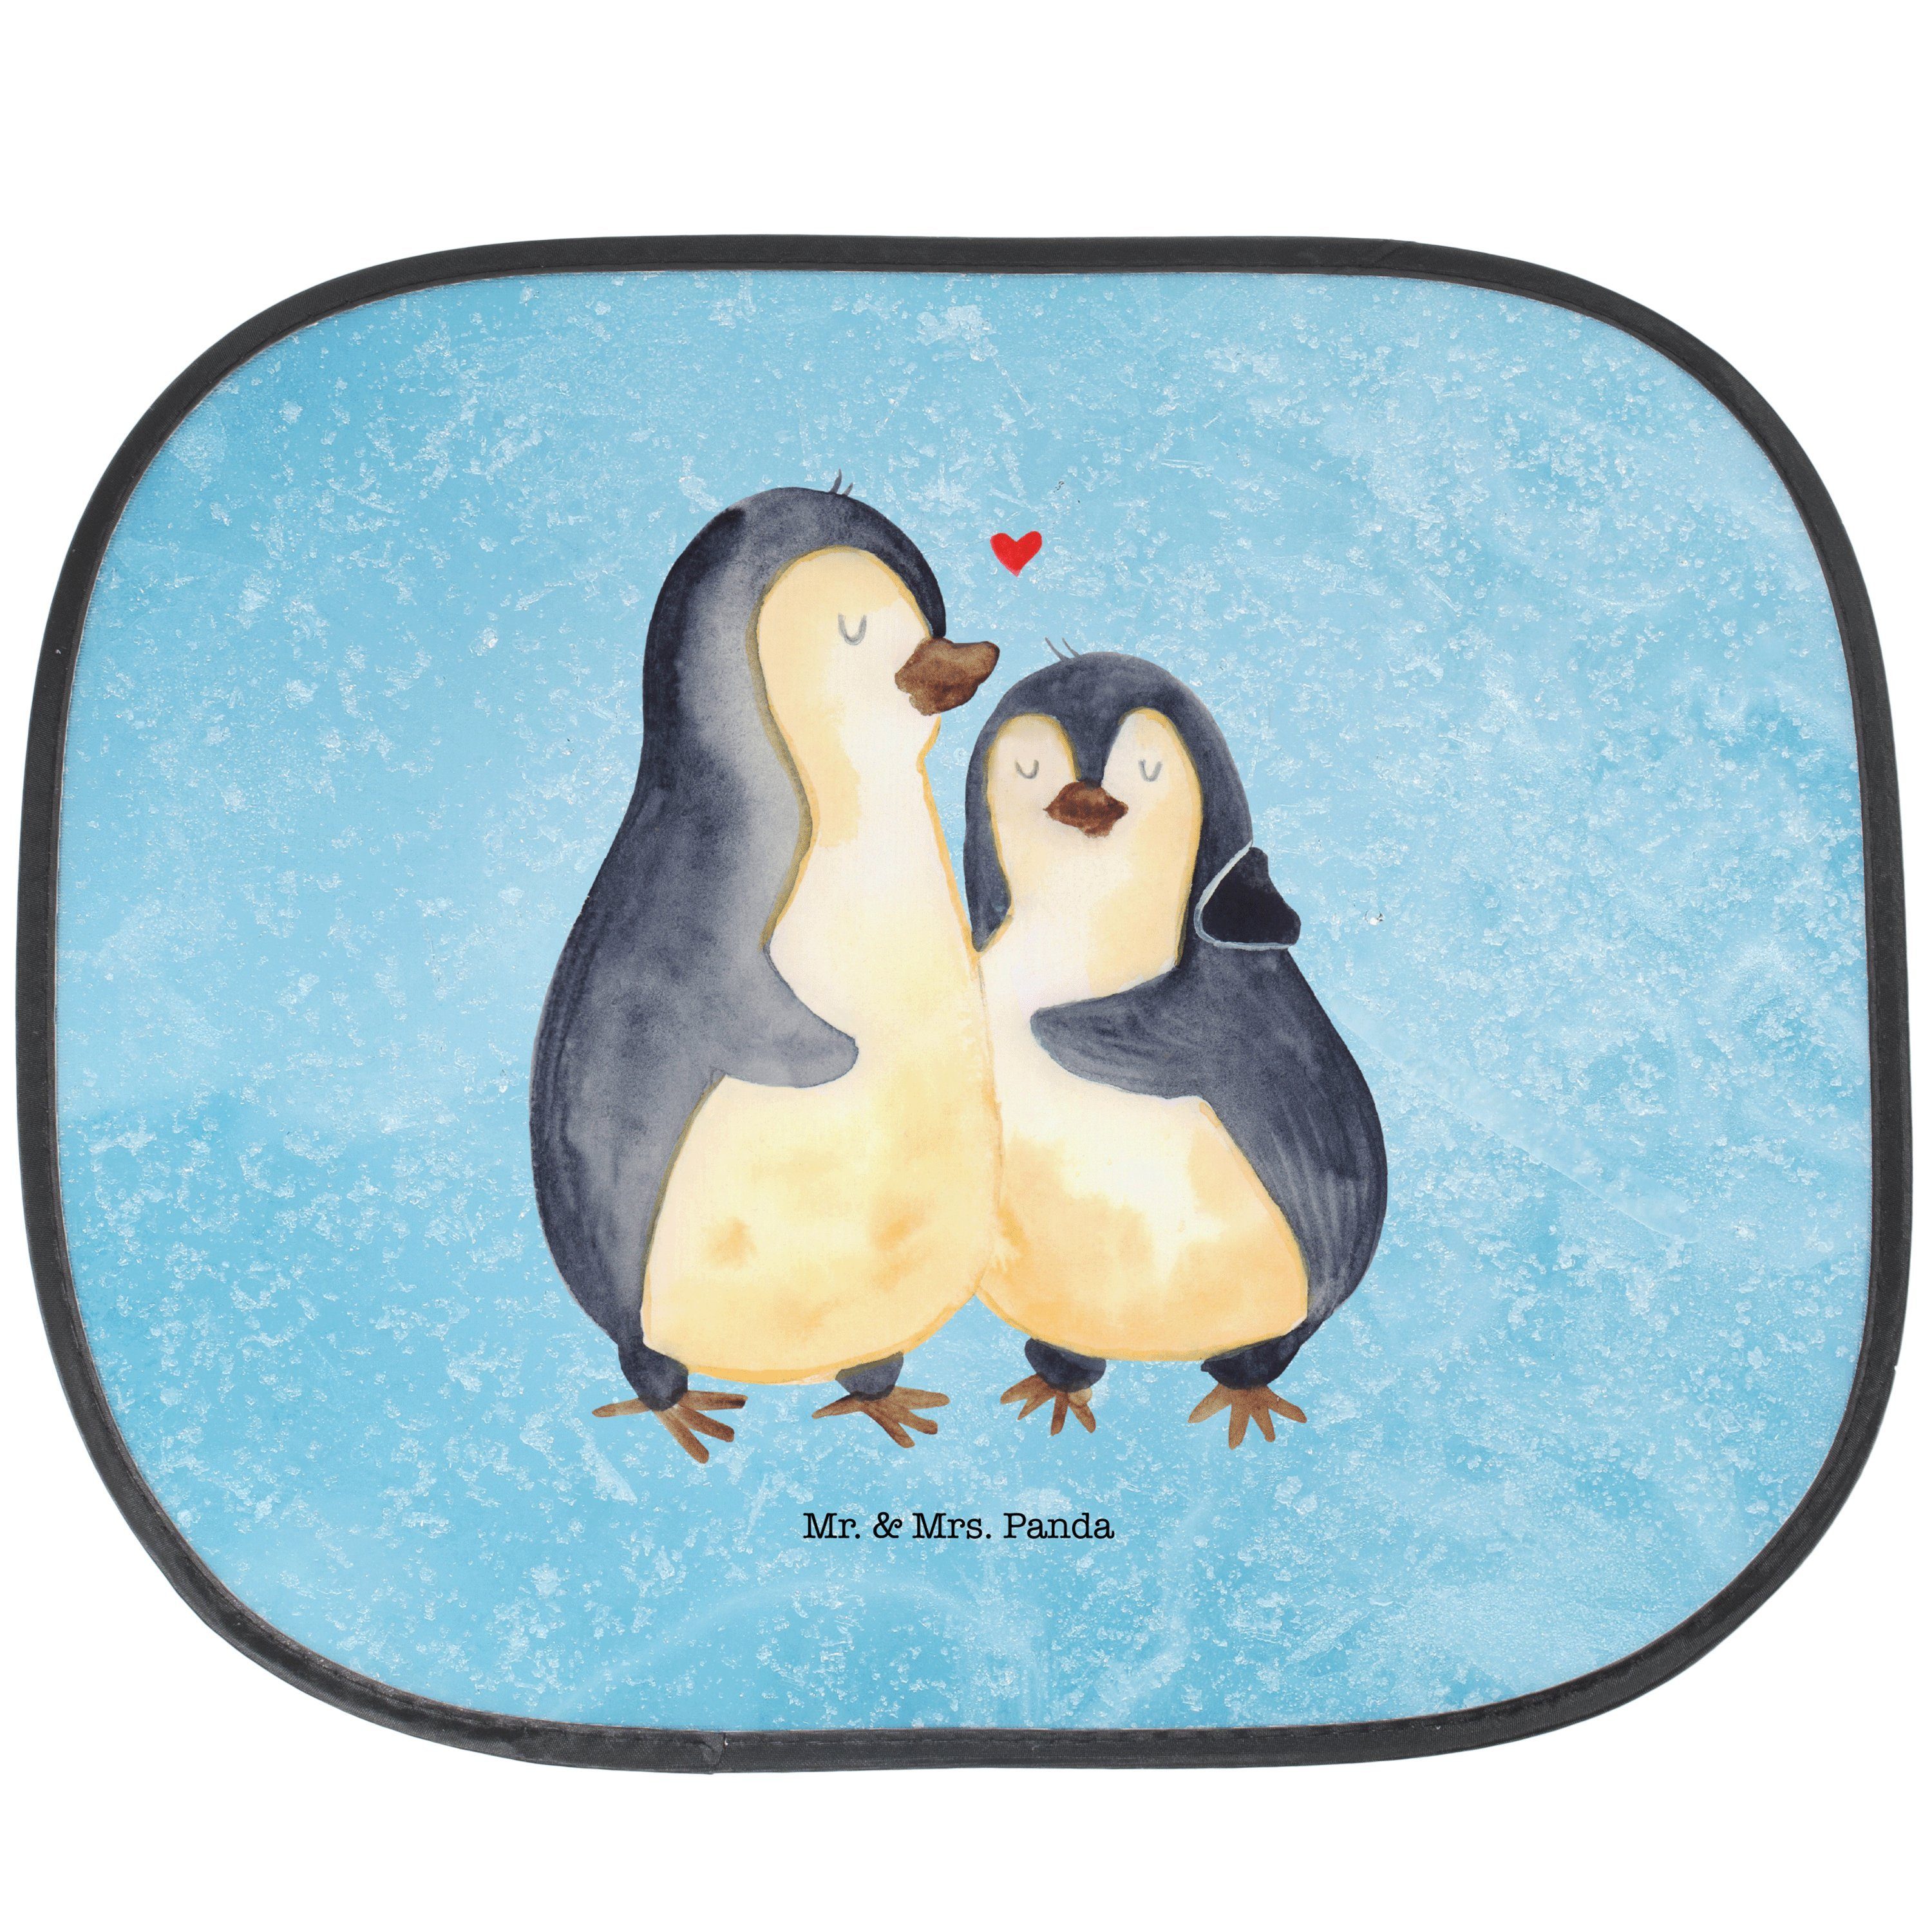 Sonnenschutz Pinguin umarmen - Eisblau - Geschenk, Sonnenschutz Baby, Liebesbeweis, Mr. & Mrs. Panda, Seidenmatt, Faltbar & Praktisch